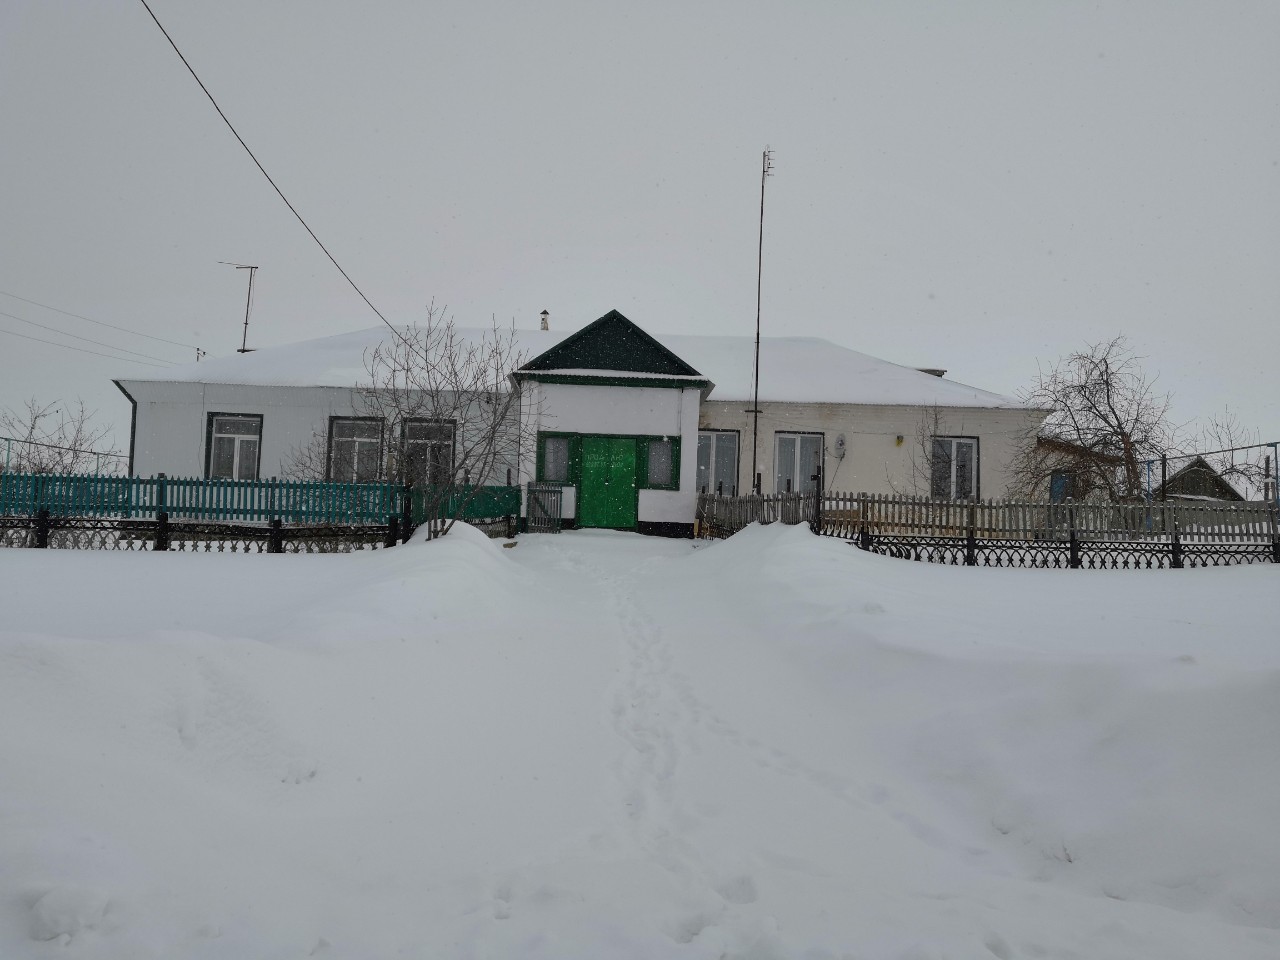 Погода в никольском оренбургской области